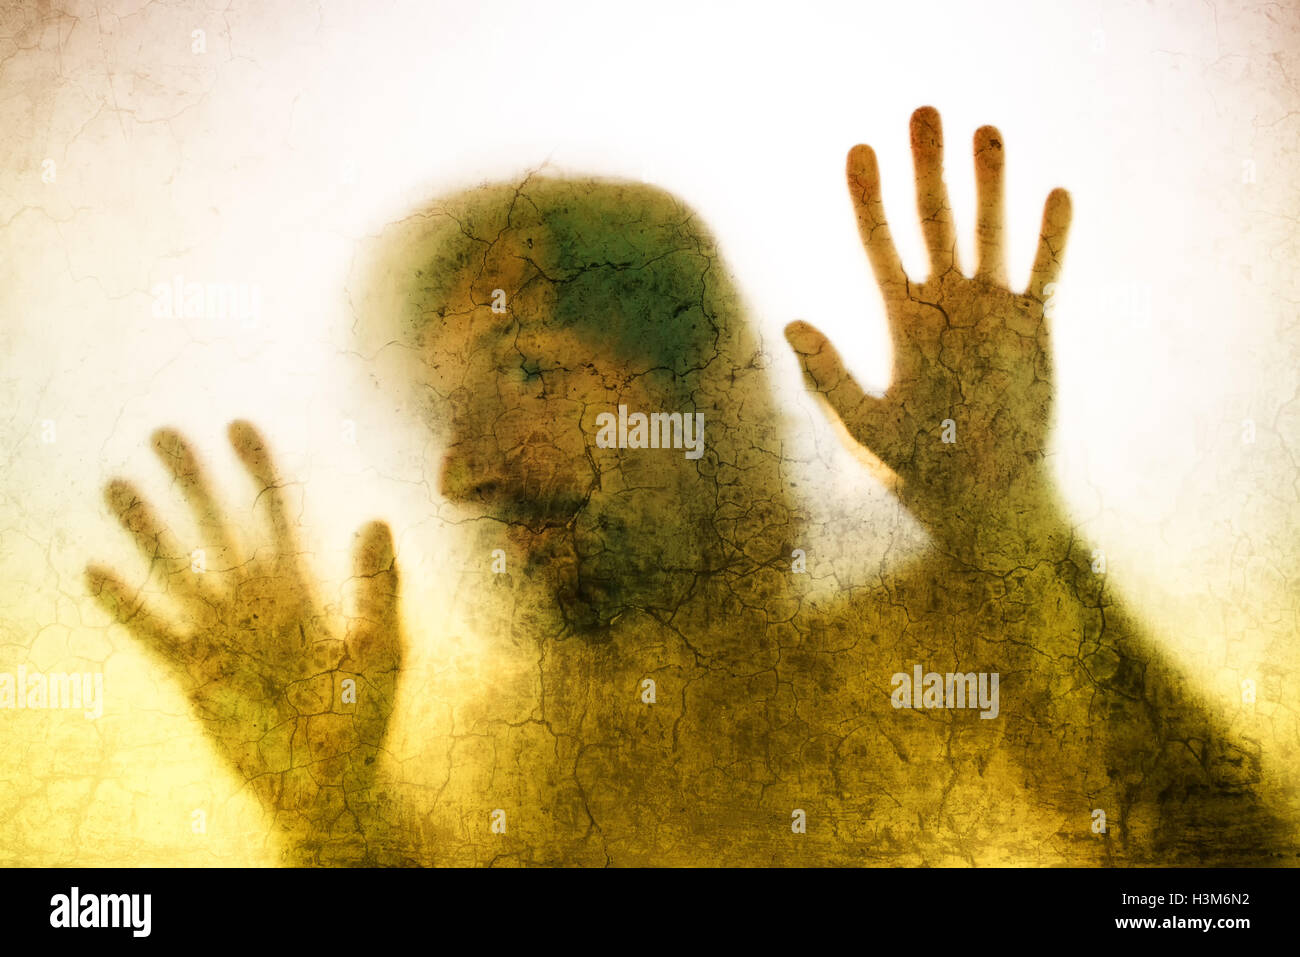 Uomo intrappolato concetto con back lit silhouette di mani dietro il vetro opaco, utili come immagine illustrativa per il traffico di esseri umani, pr Foto Stock